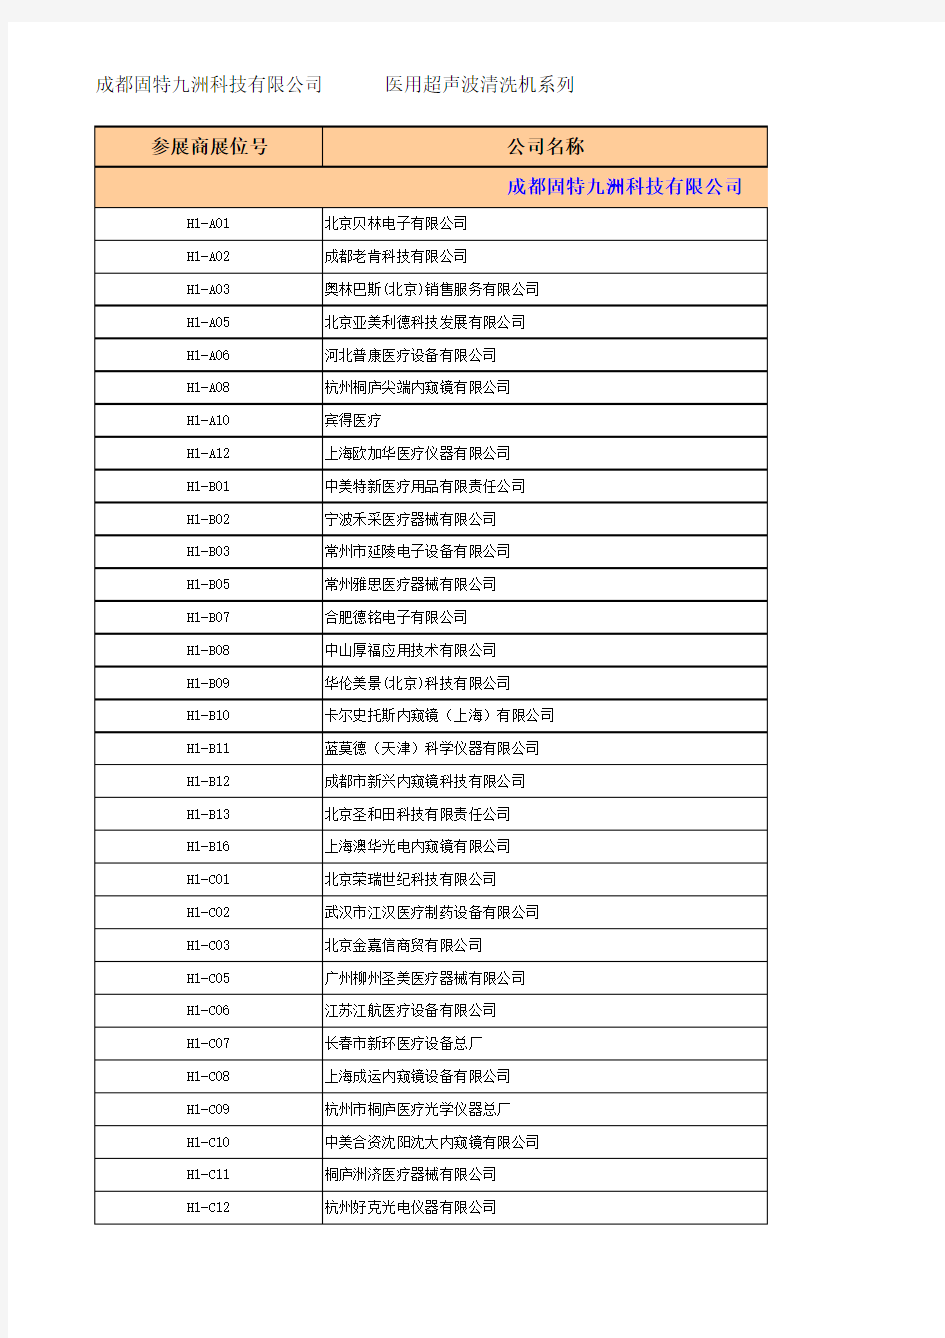 2012年“成都CMEF医博会”全部参展商名单